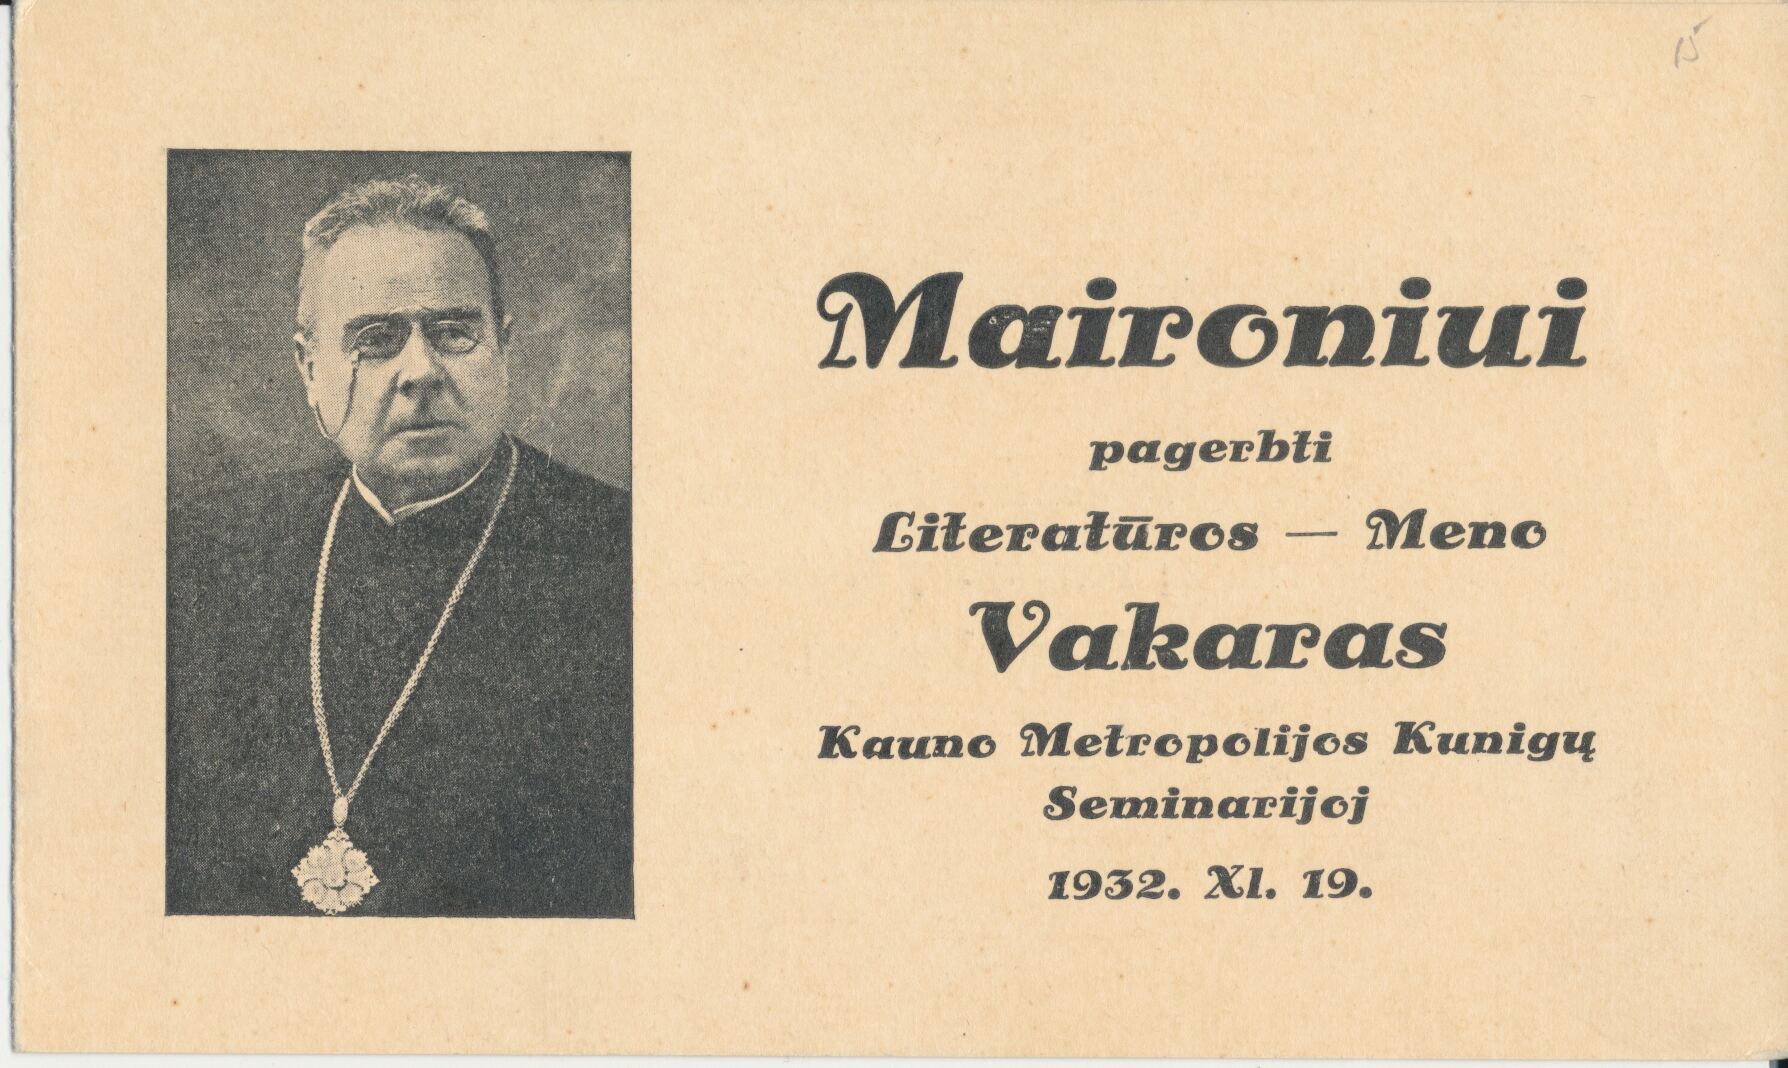 Kvietimas į vakarą Maironiui pagerbti, 1932 m. MLLM 11972